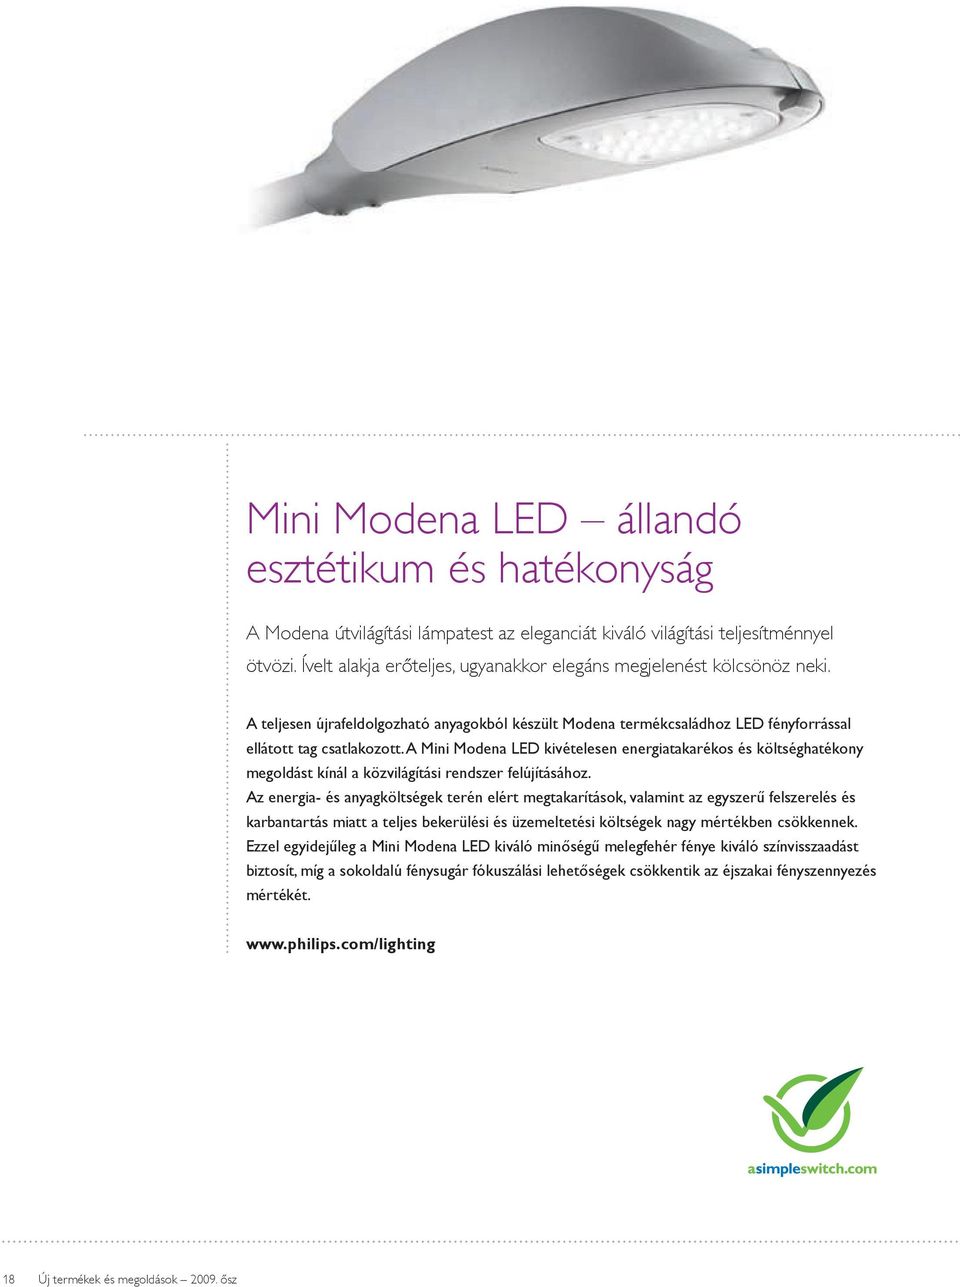 A Mini Modena LED kivételesen energiatakarékos és költséghatékony megoldást kínál a közvilágítási rendszer felújításához.